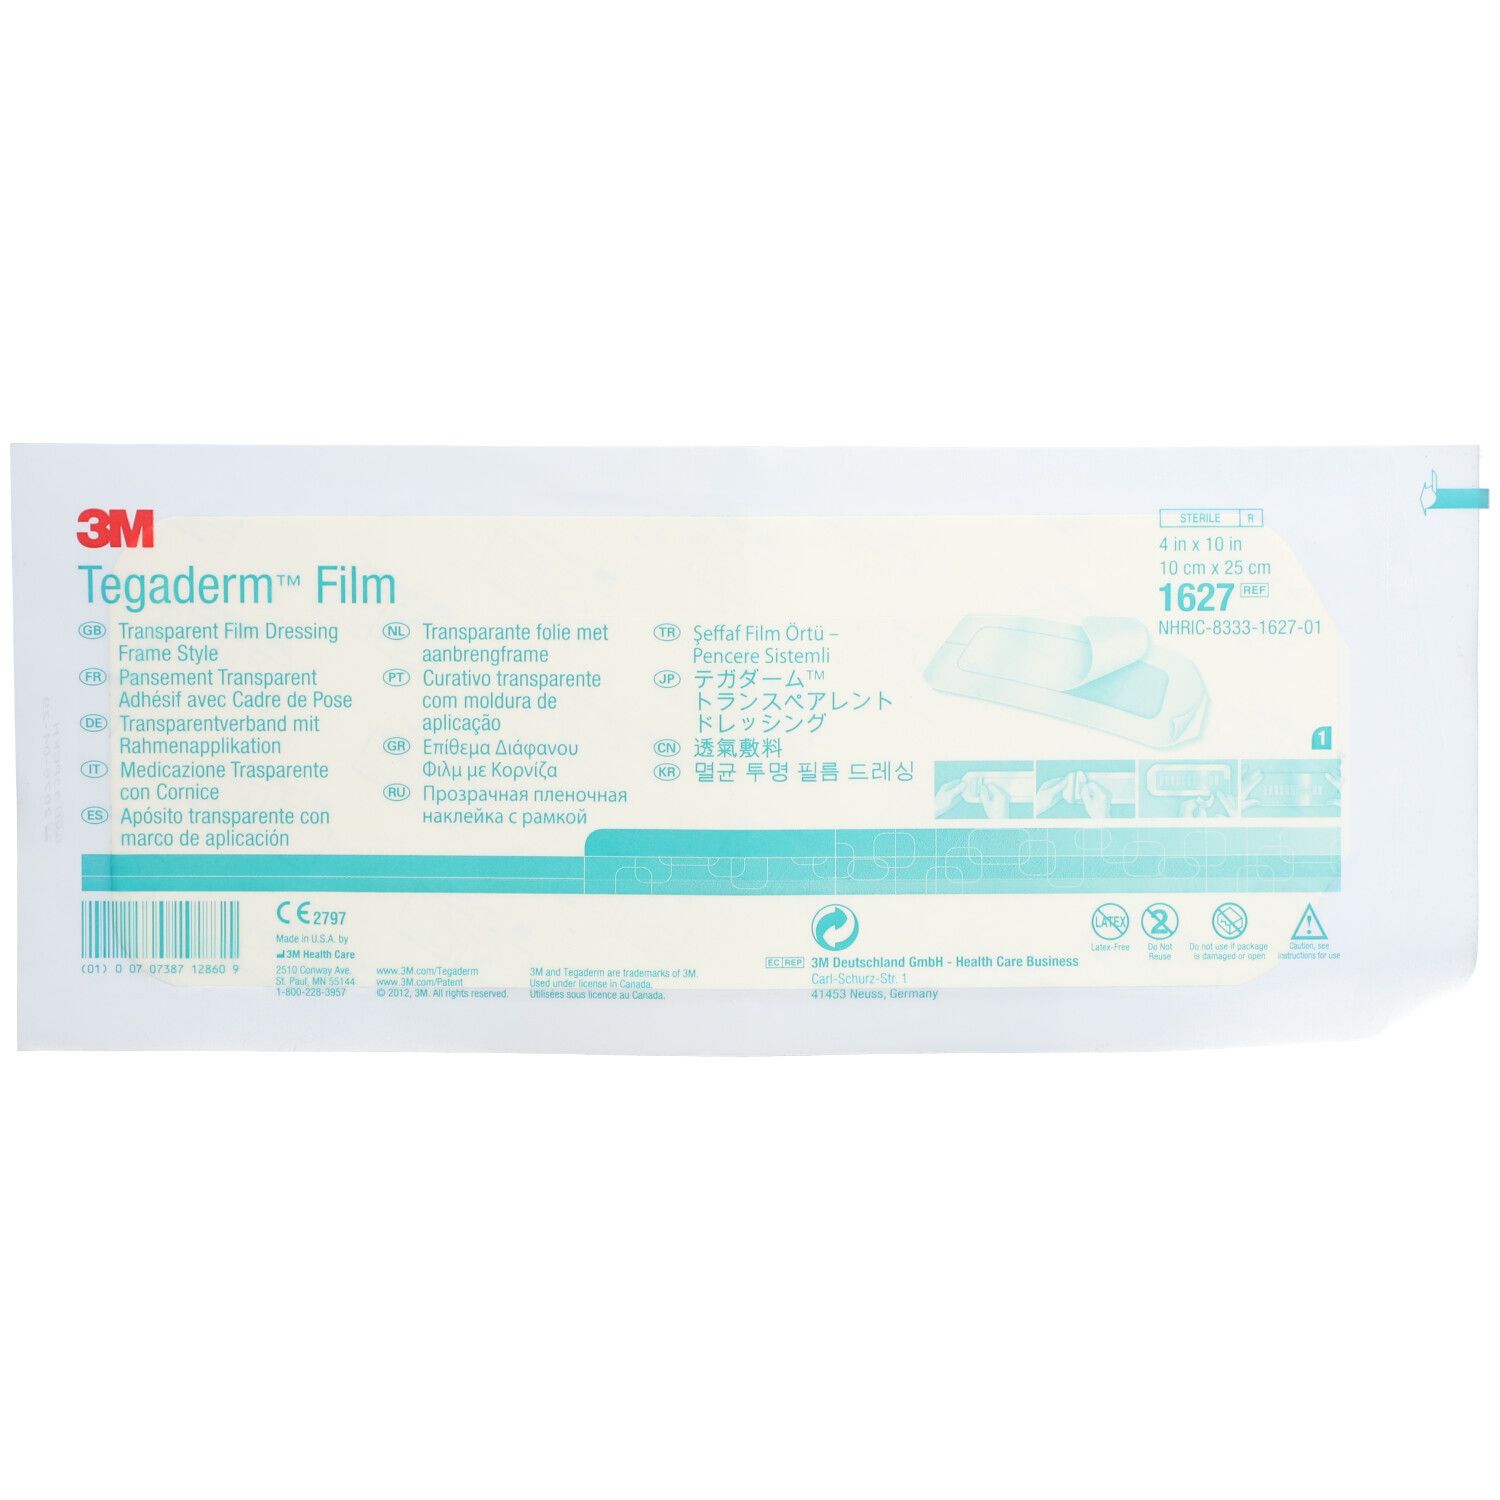 3M Tegaderm™ Film Medicazione Trasparente con Cornice 10 cm x 25 cm